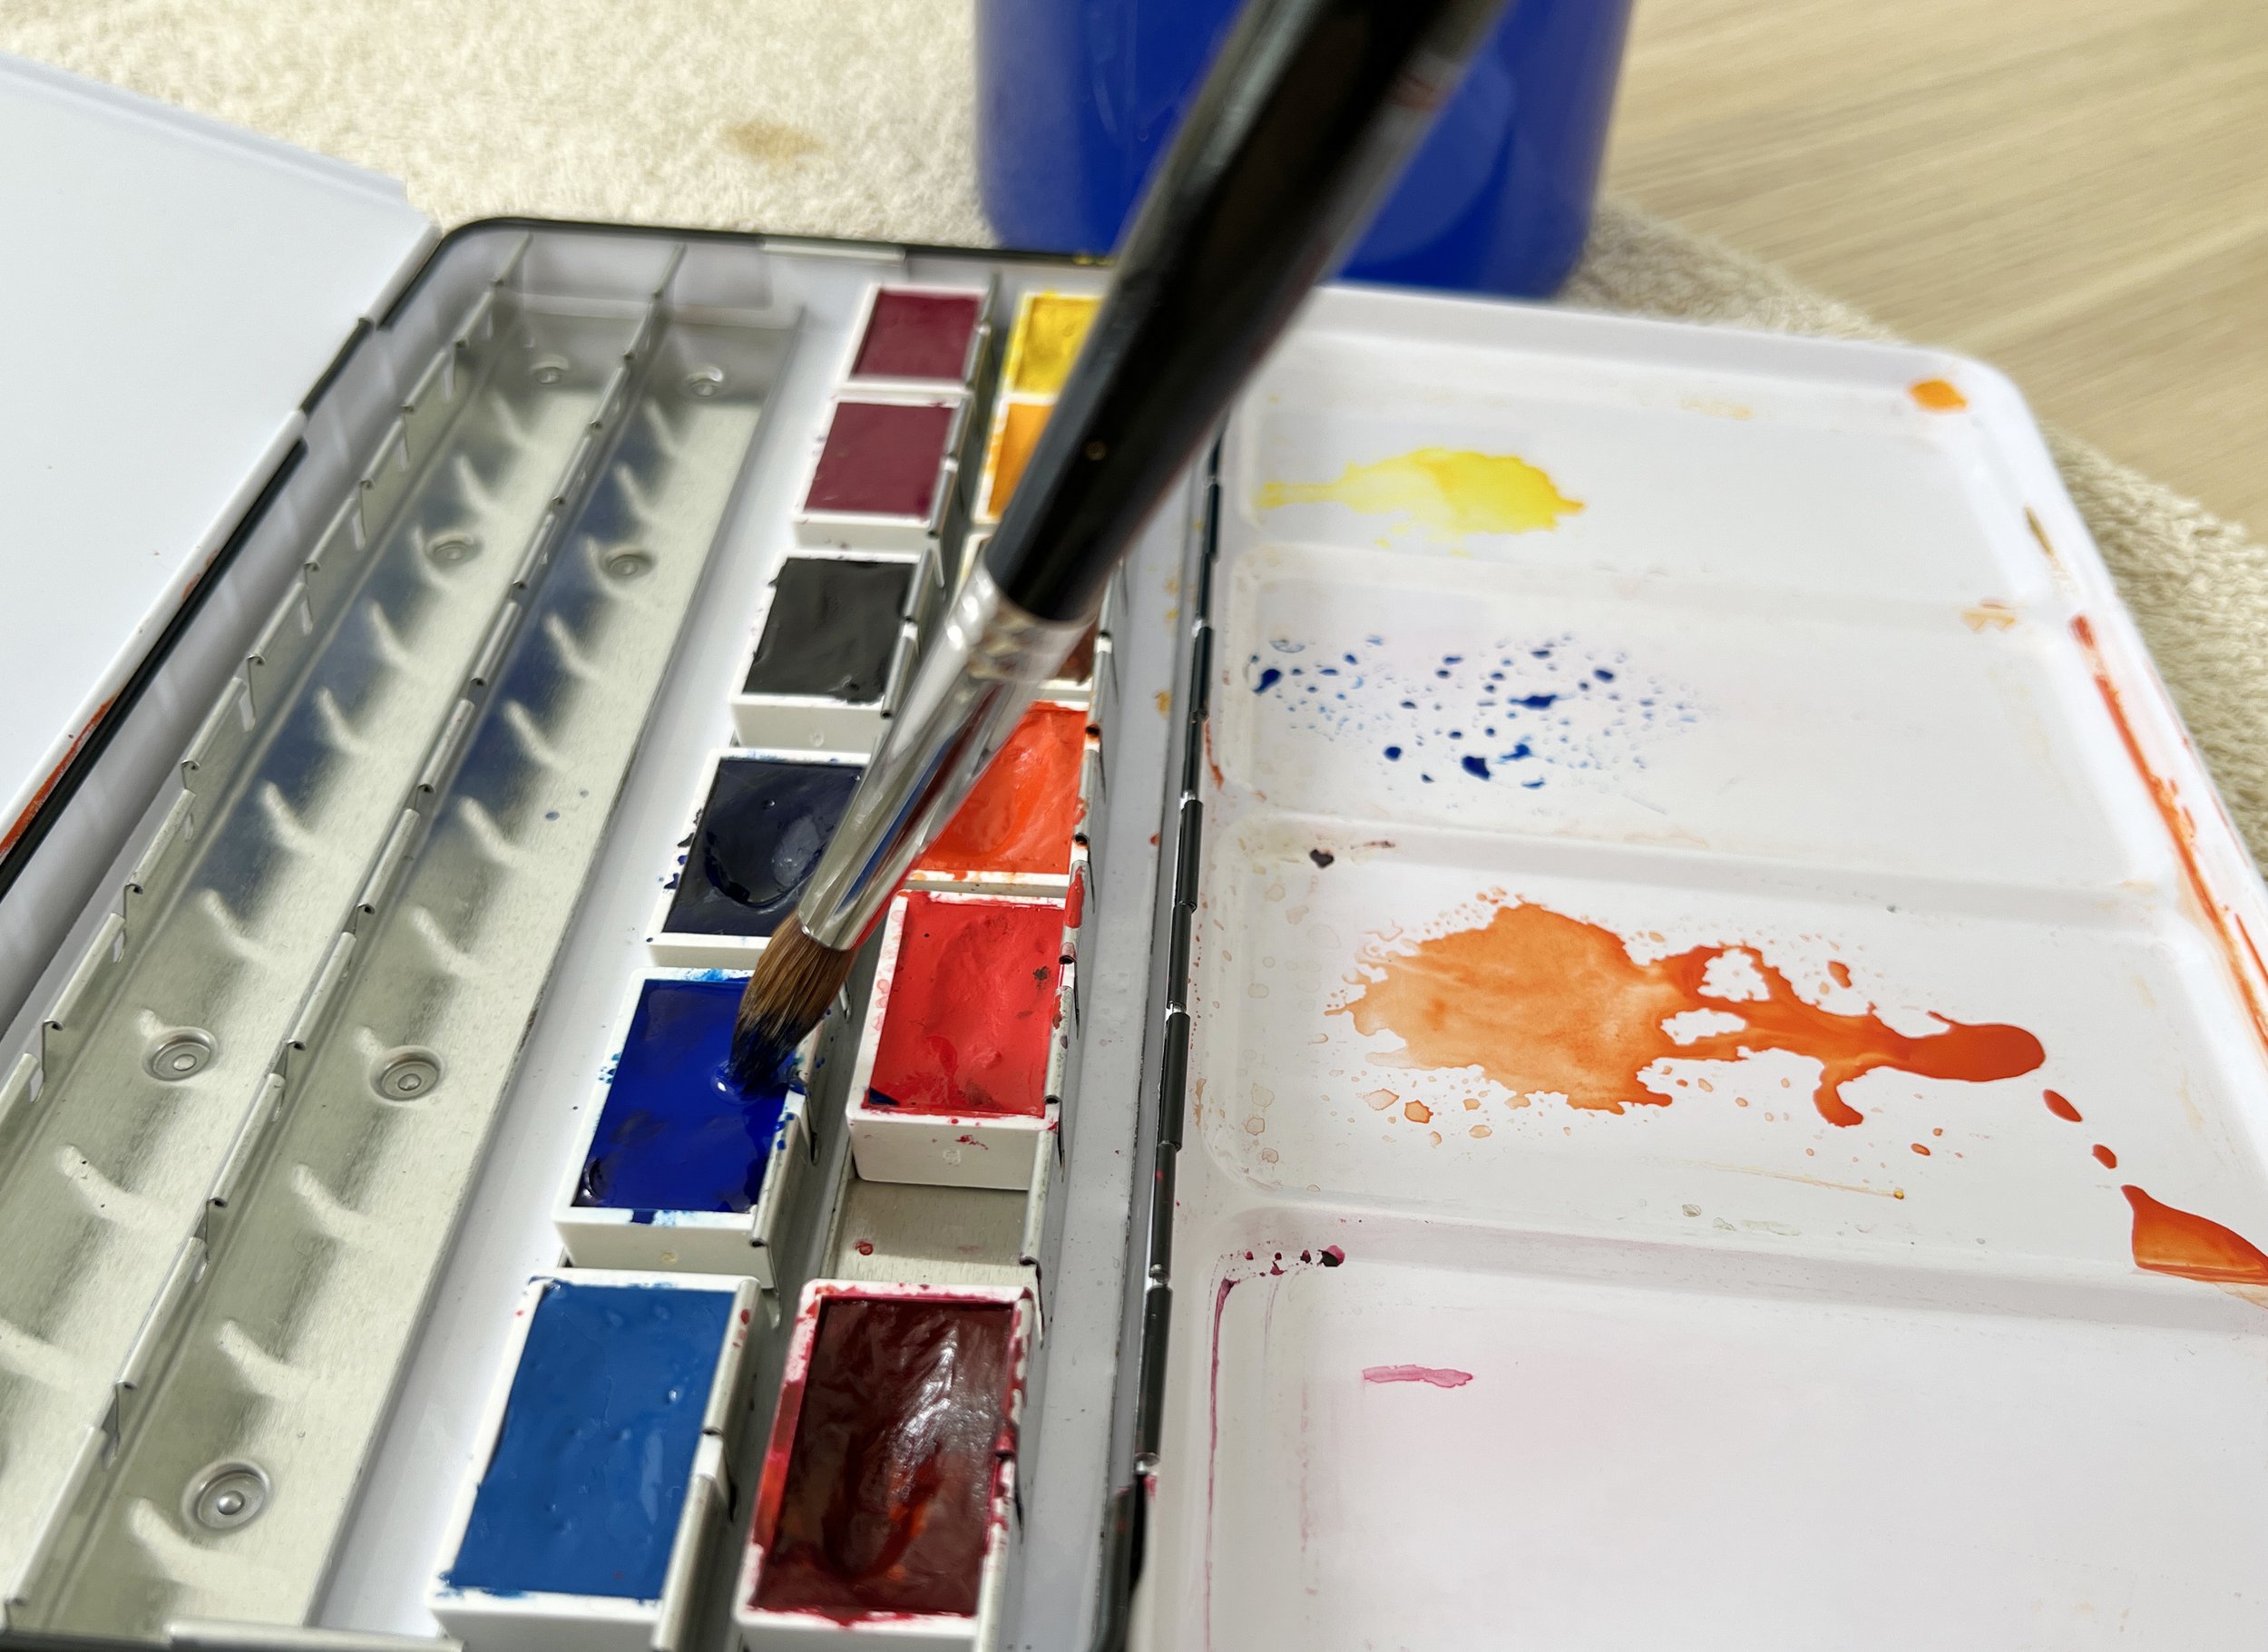 Watercolor Paint Sets: Pans & Tubes